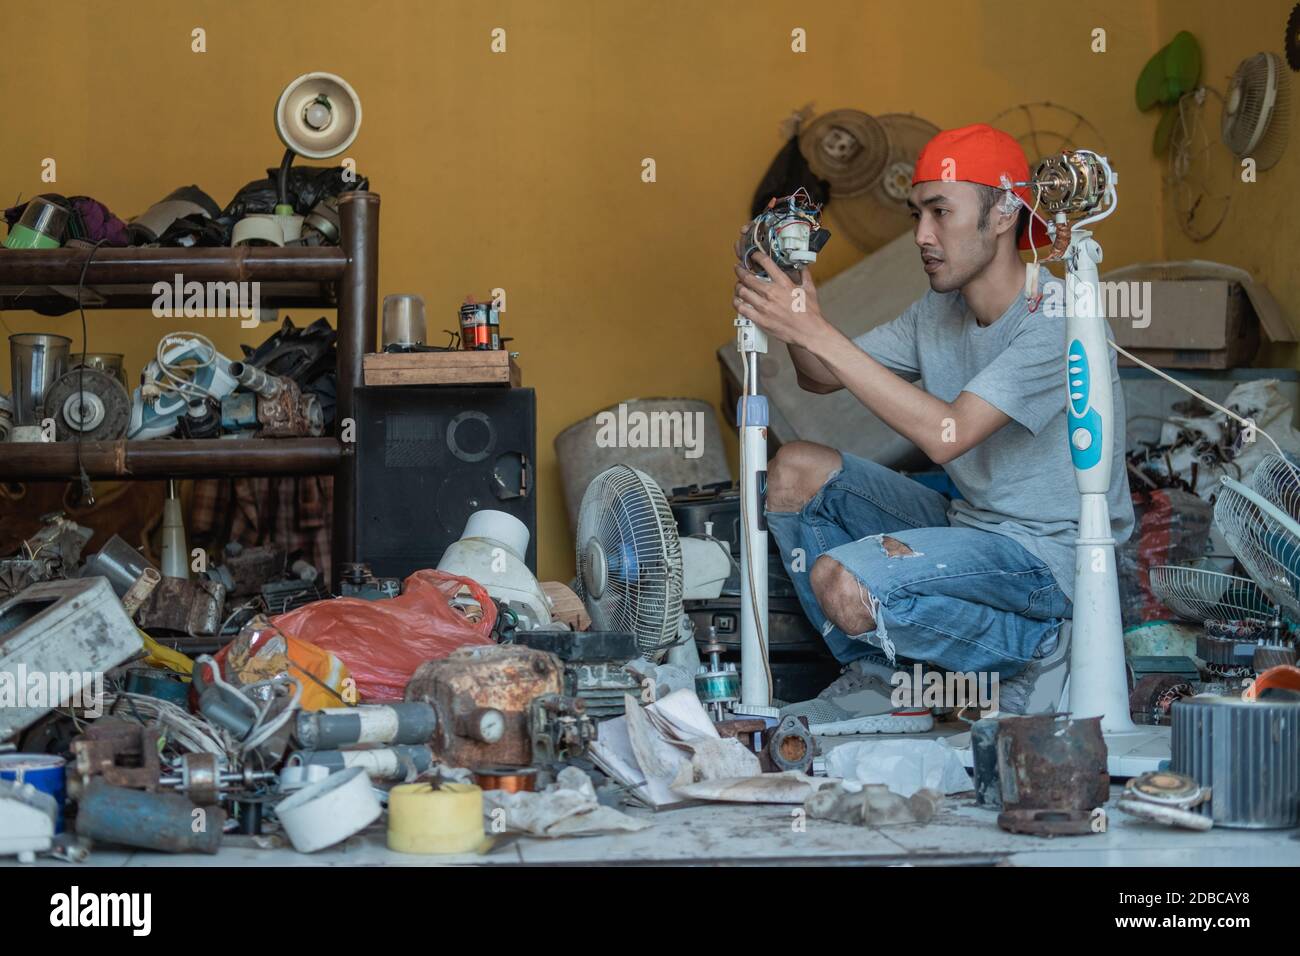 electronics repairman fixing a broken fan at an electronics repair shop Stock Photo